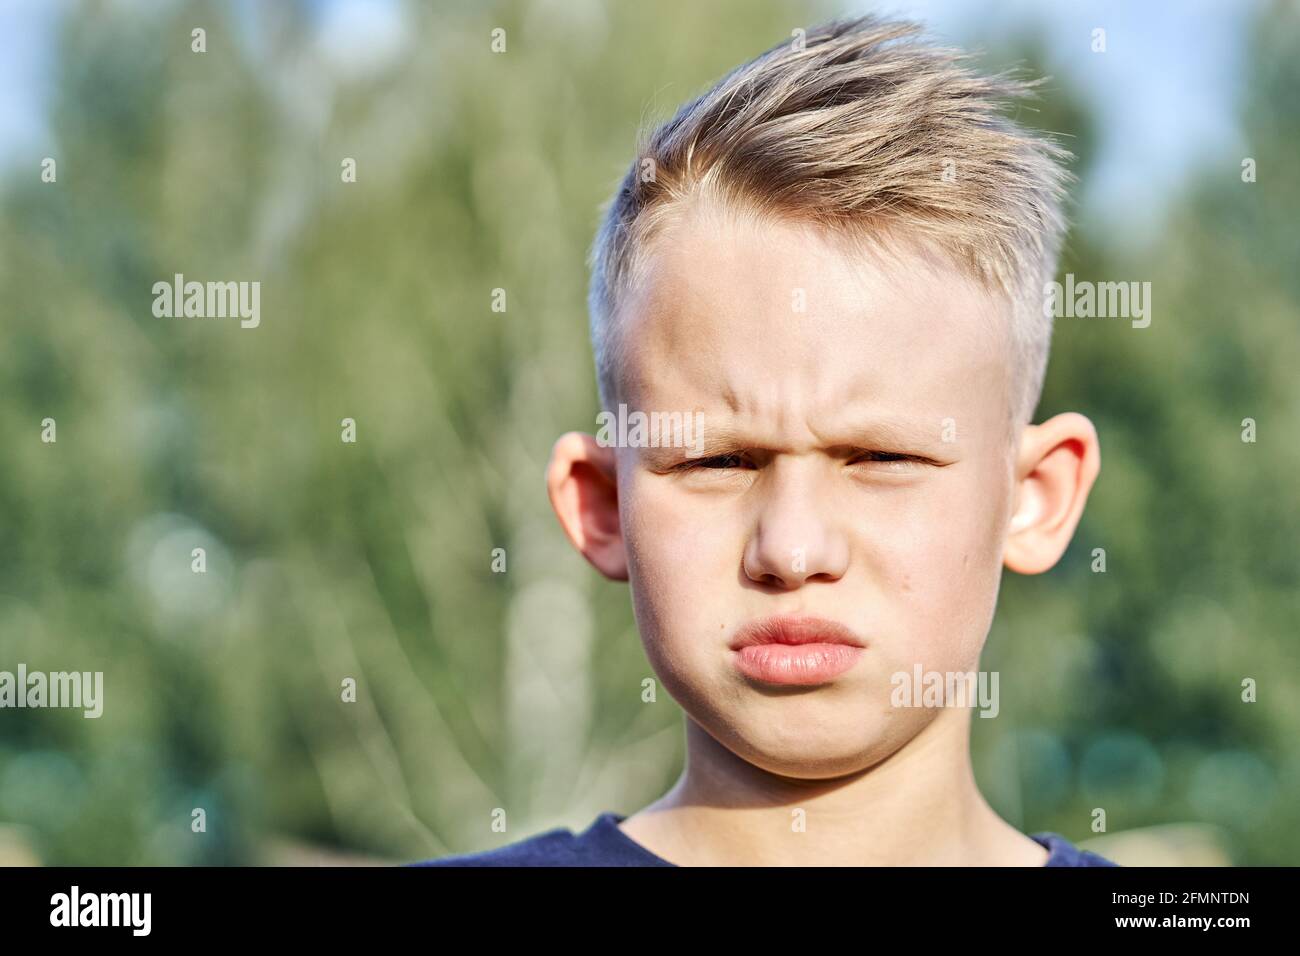 Bambino frustrato con una breve acconciatura in posa per la fotocamera verde offuscato soleggiato estate parco cittadino estrema closeup Foto Stock